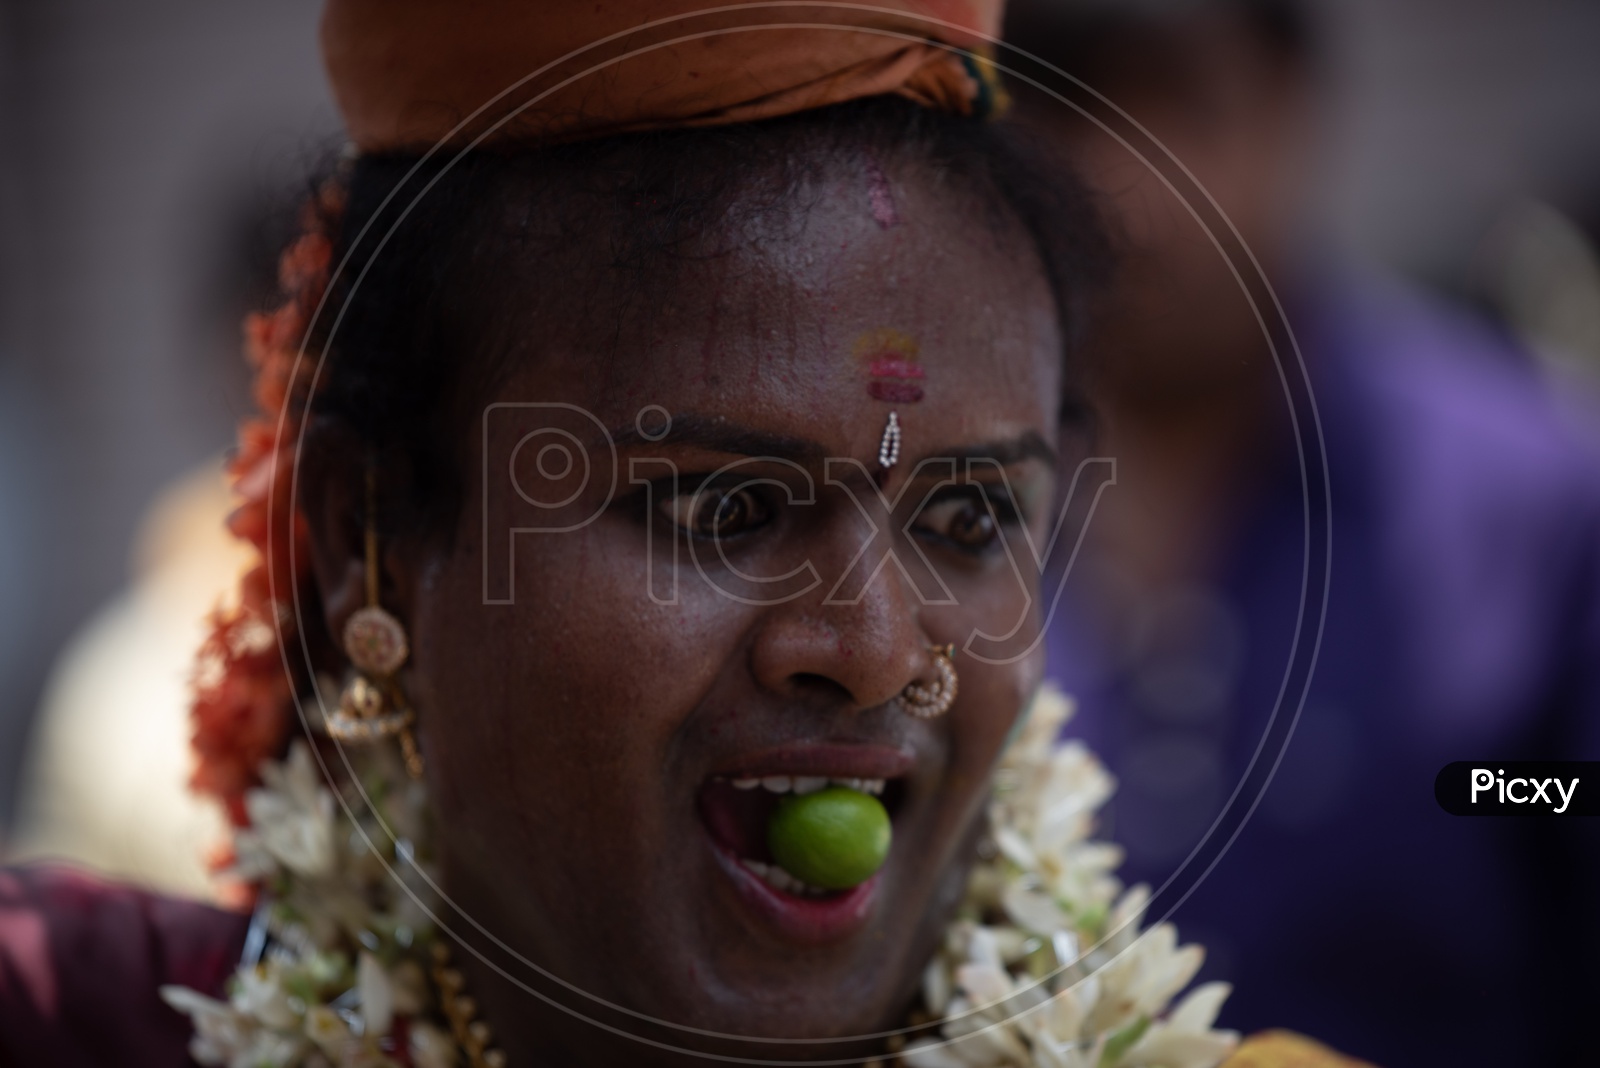 Bonalu Festival Celebrations at Ujjaini Mahakali Temple